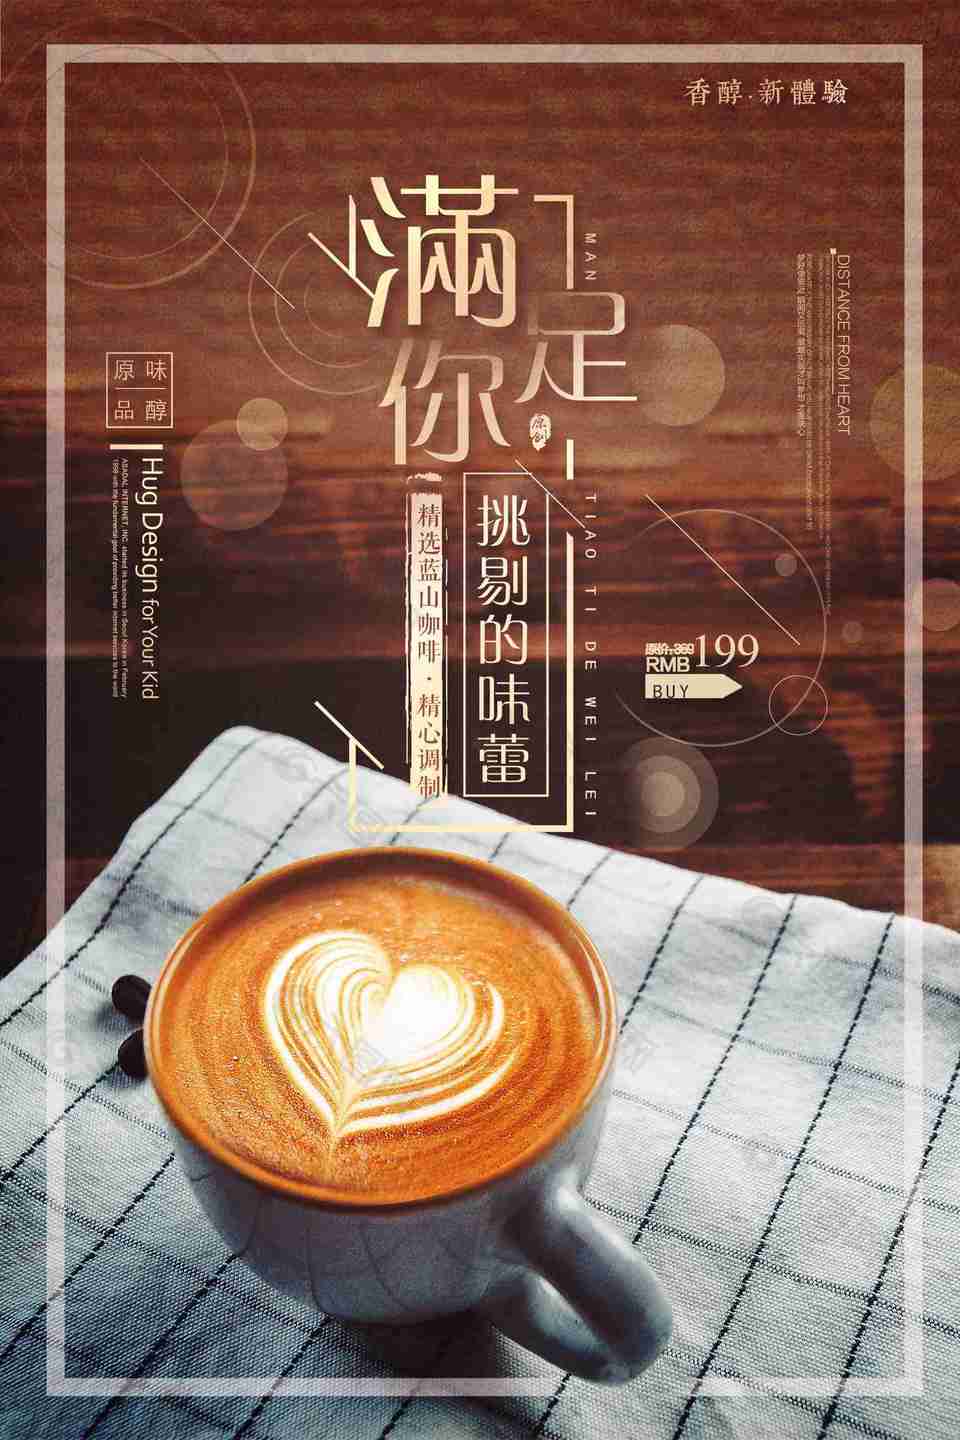 拿铁咖啡创意海报设计